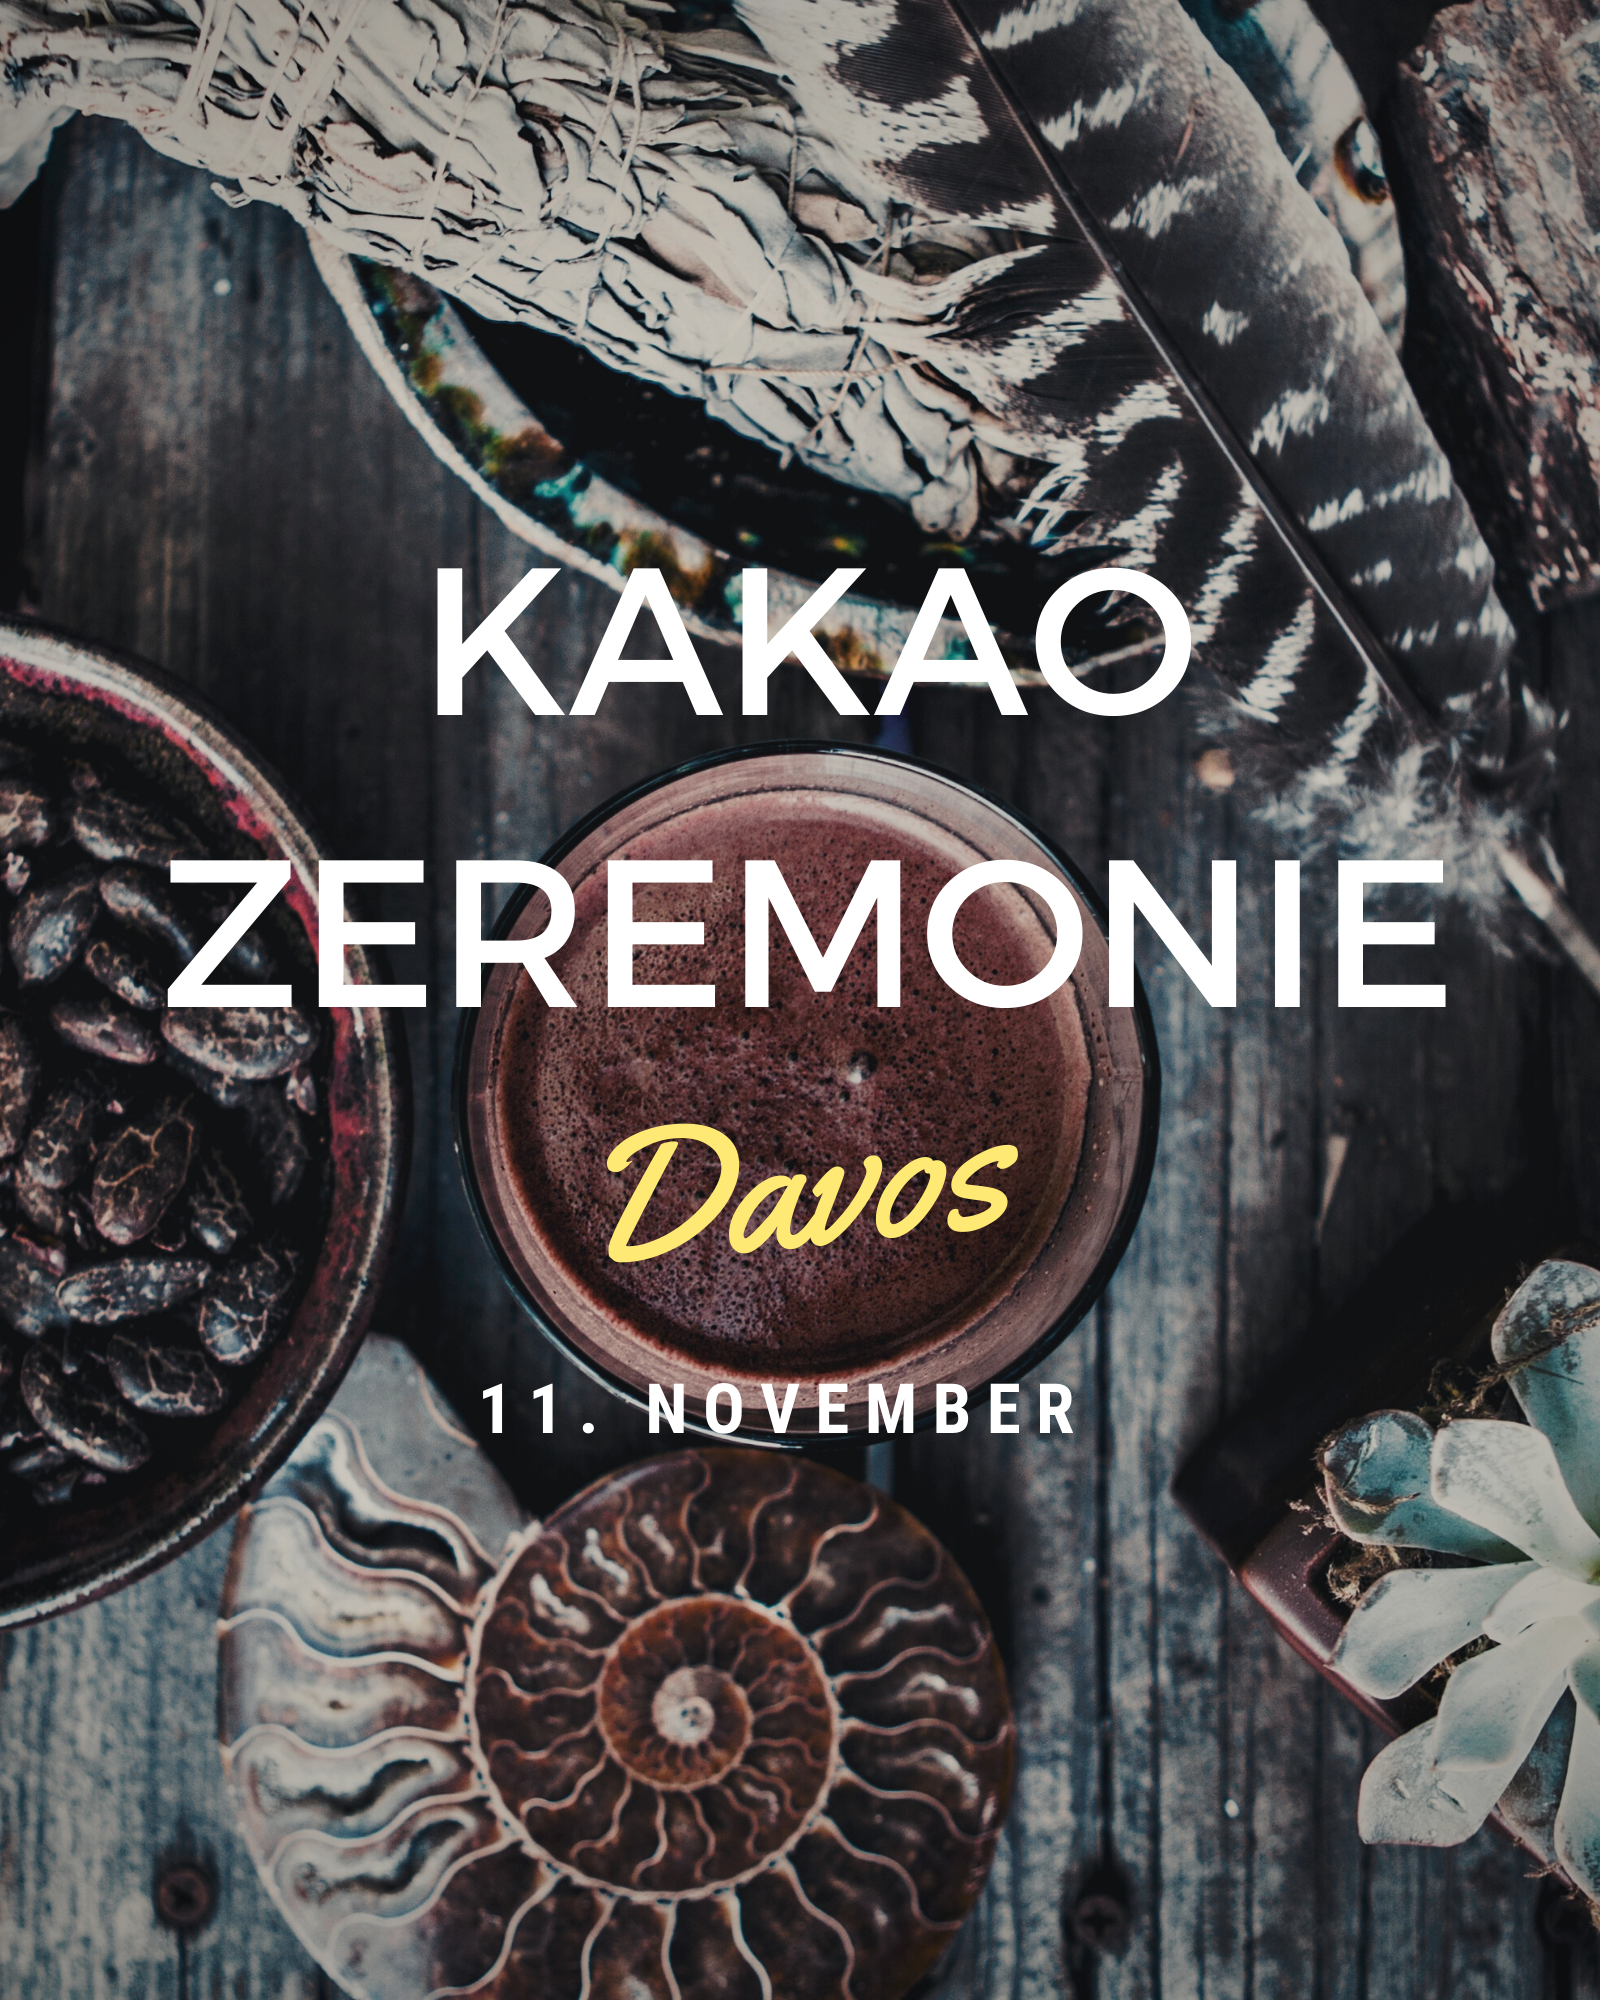 Davos Kakao Zeremonie